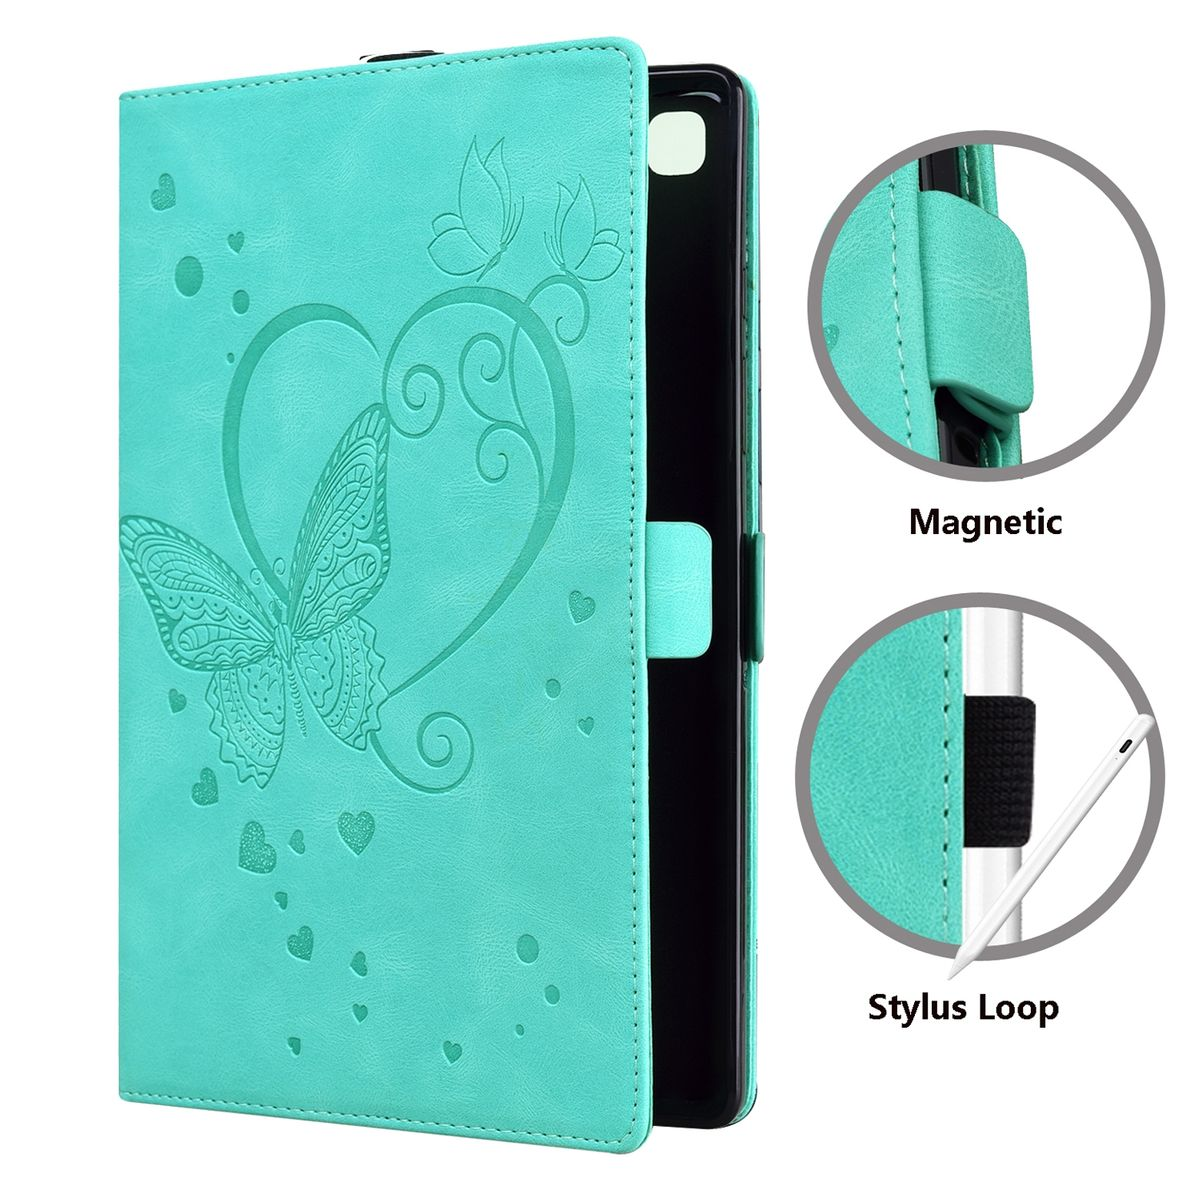 WIGENTO Schmetterling Wake Pad Muster Funktion, Sleep Cover, Grün Tasche Design / Full 5 Pad UP mit 5 Xiaomi, Pro, aufstellbar